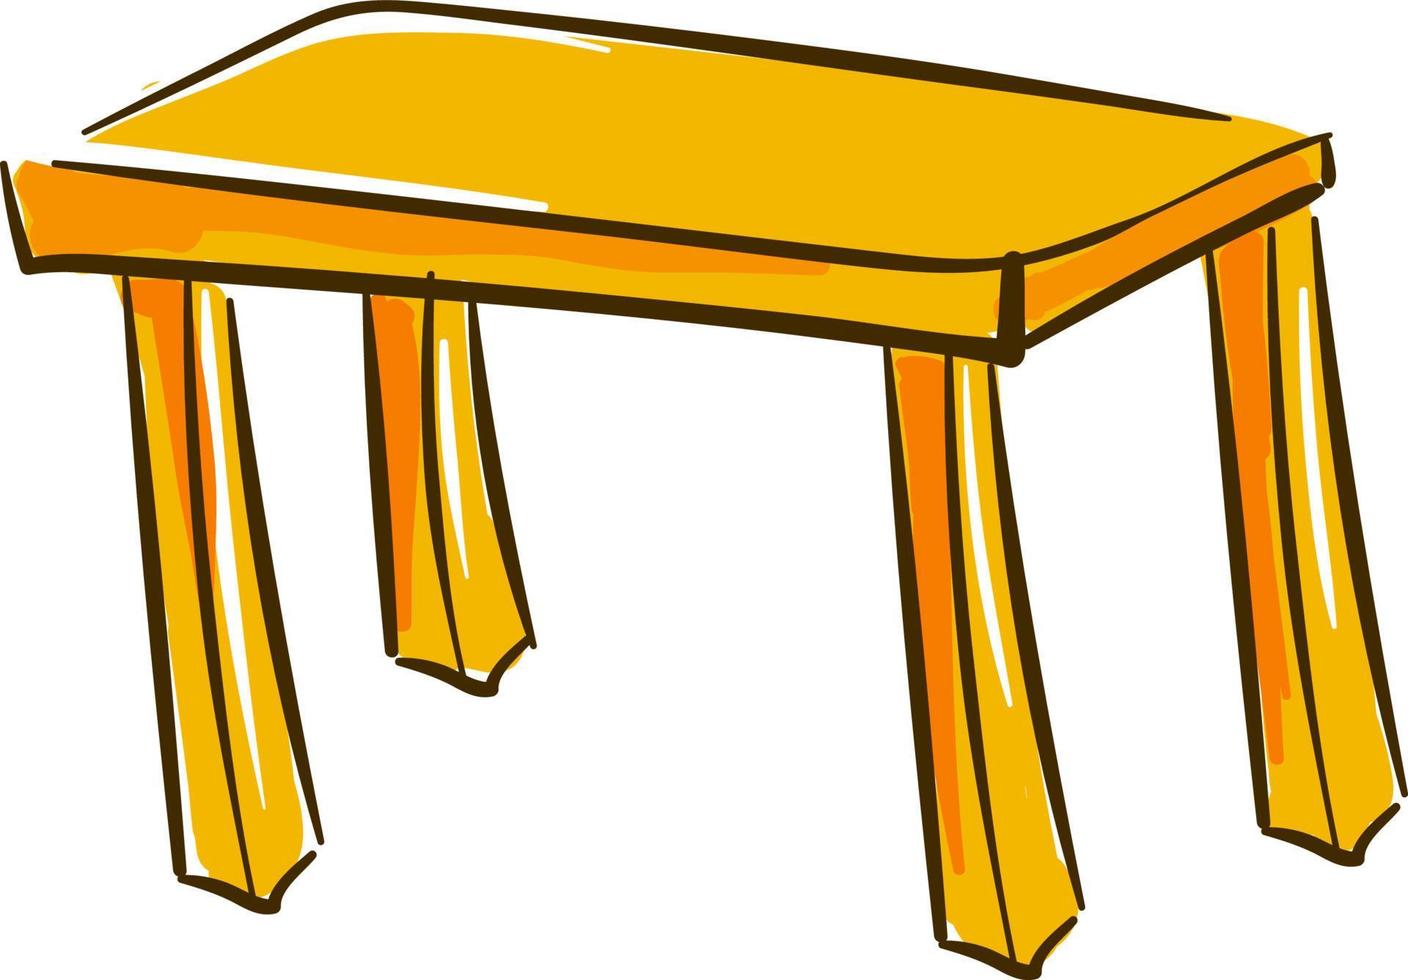 gul tabell, illustration, vektor på vit bakgrund.